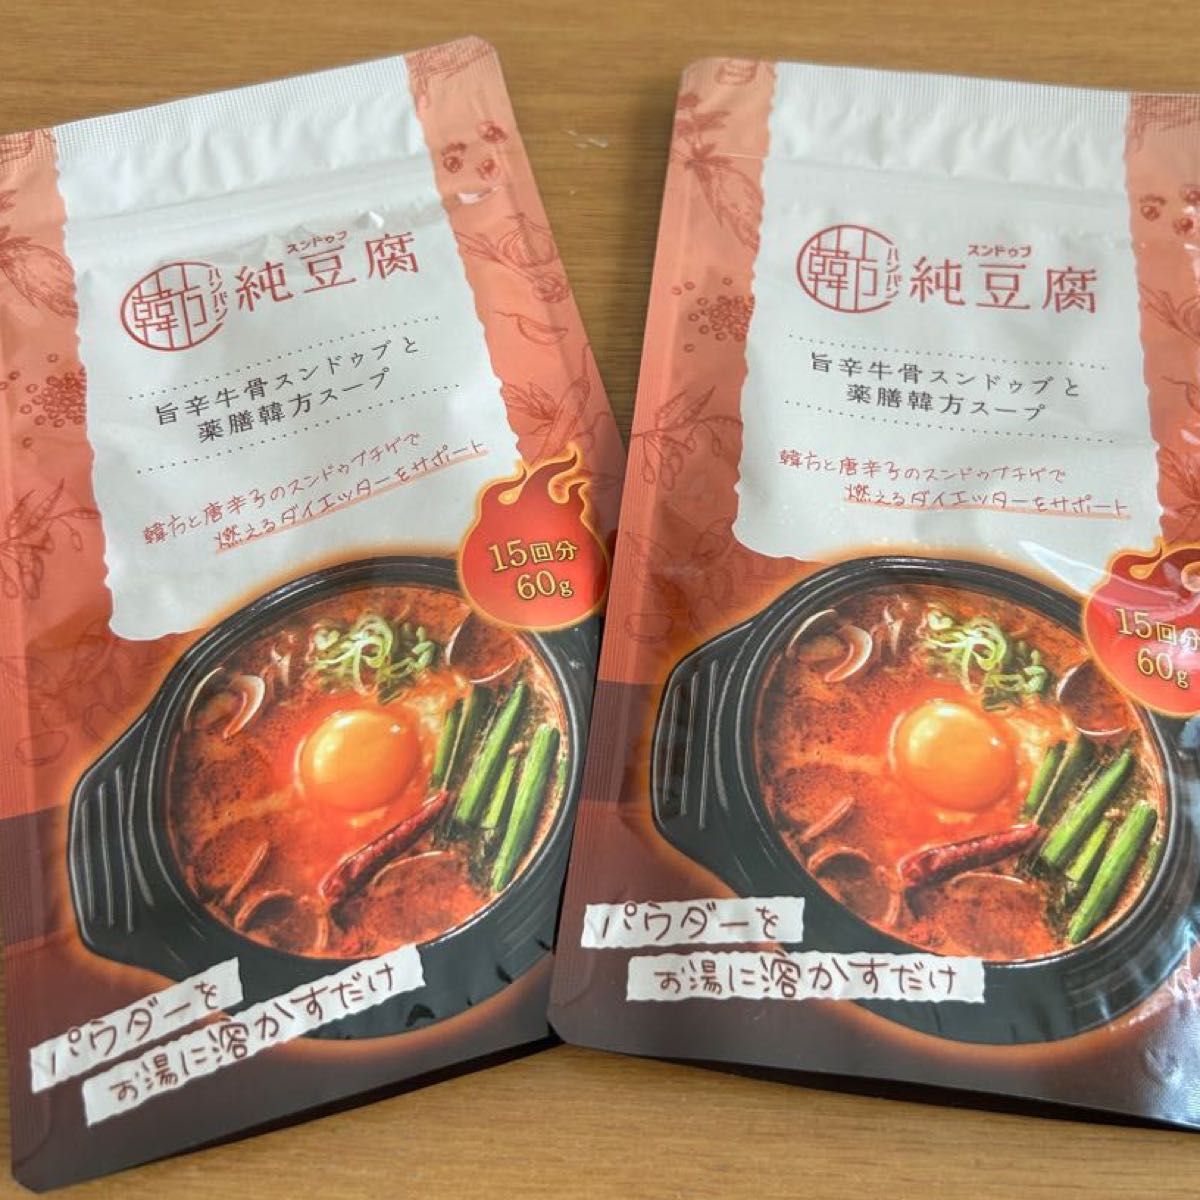 ハンバン スンドゥブ/ 韓方 純豆腐 15回分 60g x 2袋-